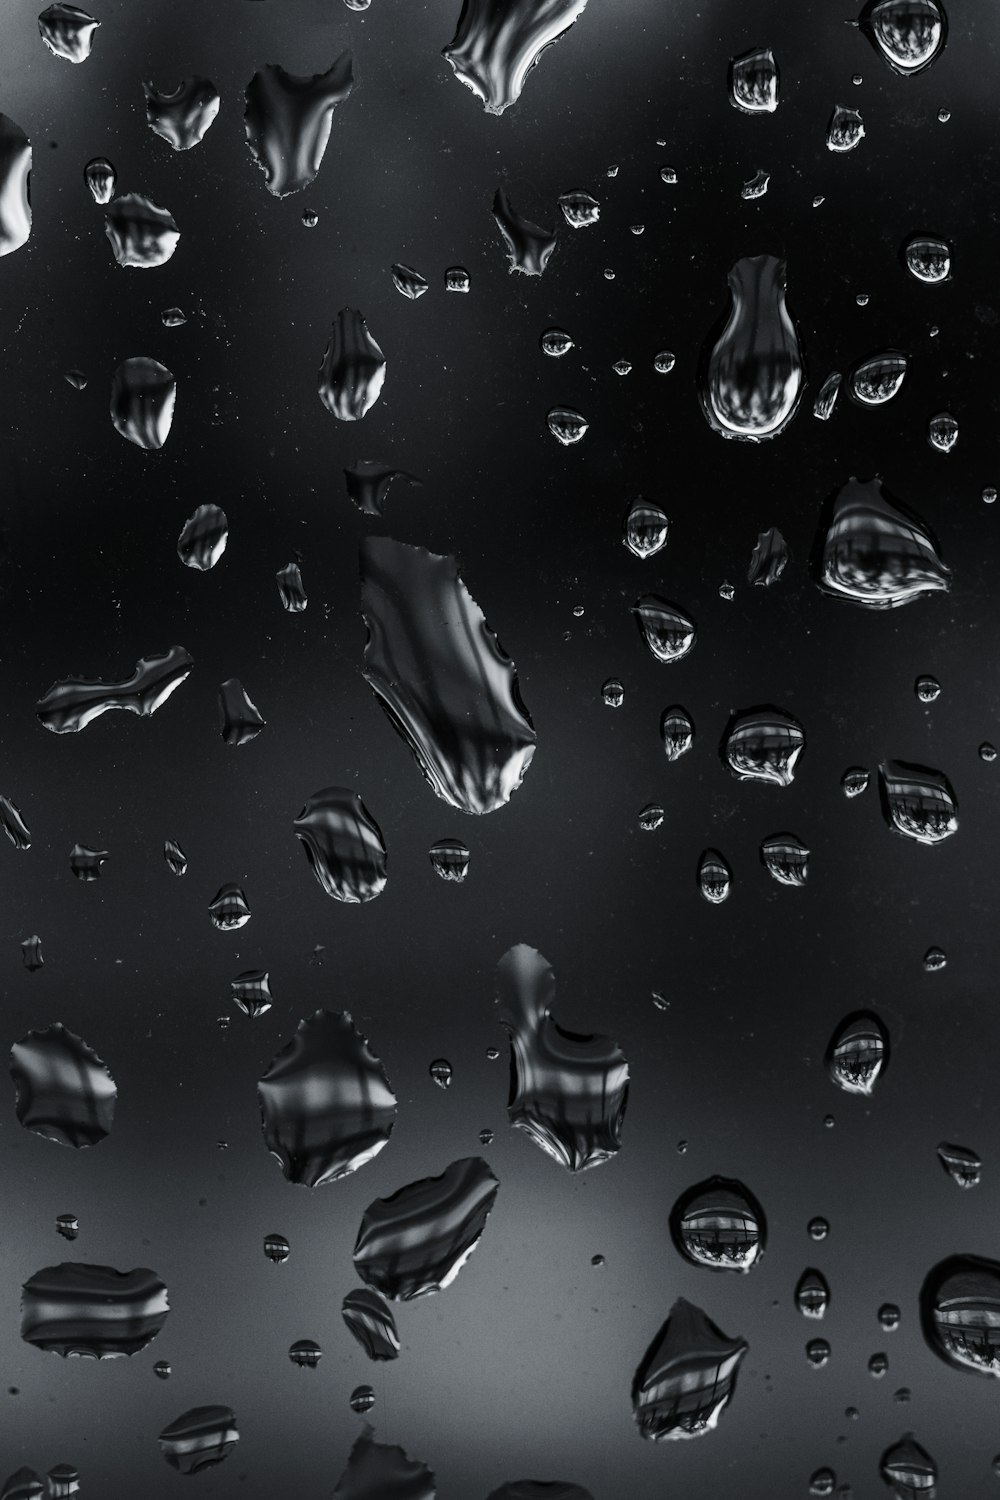 水滴の白黒写真